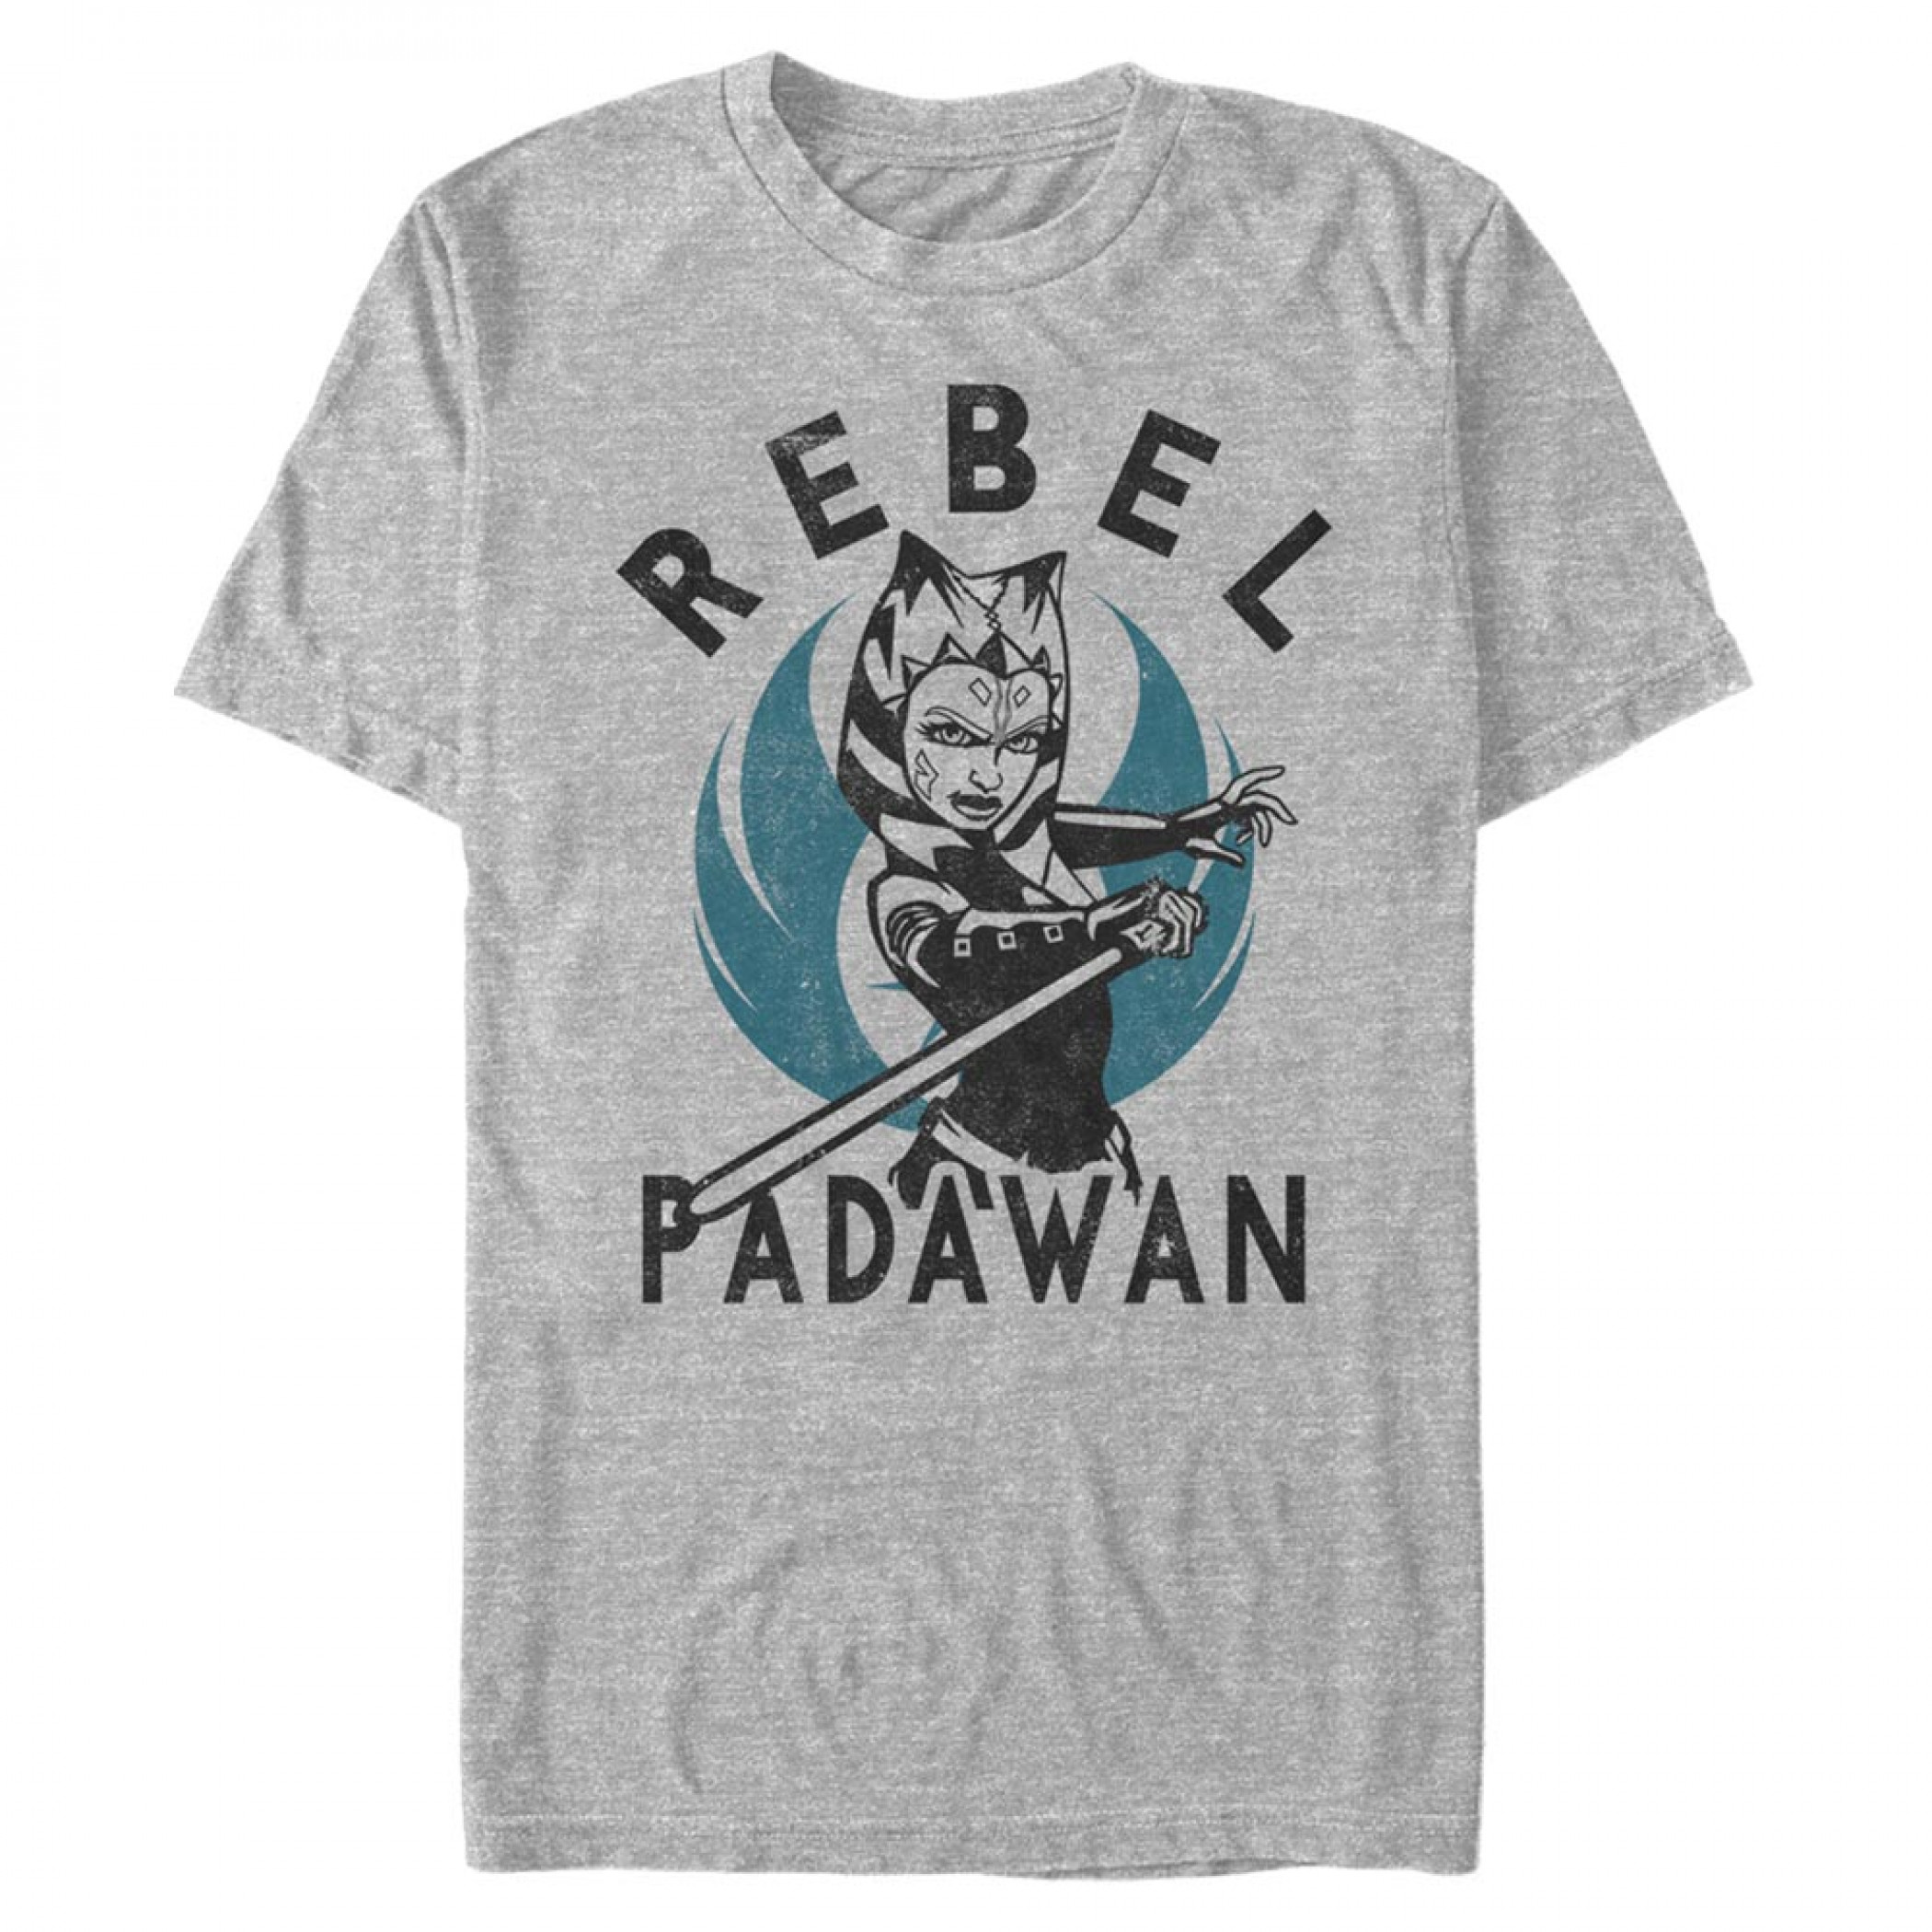 Star Wars Clone Wars Rebel Padawan T-Shirt